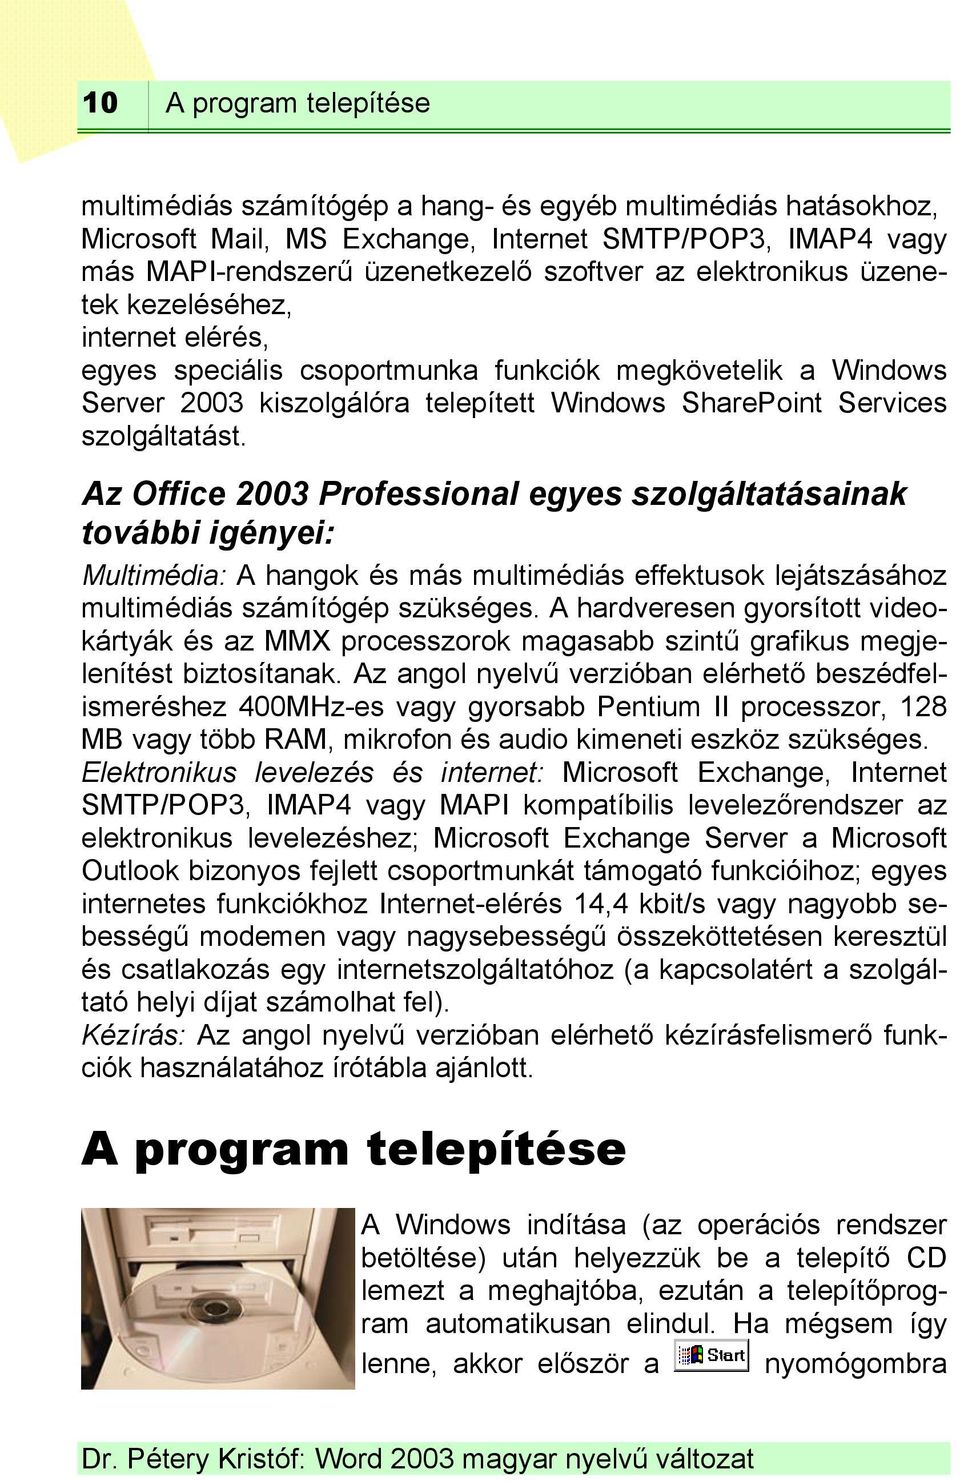 Az Office 2003 Professional egyes szolgáltatásainak további igényei: Multimédia: A hangok és más multimédiás effektusok lejátszásához multimédiás számítógép szükséges.